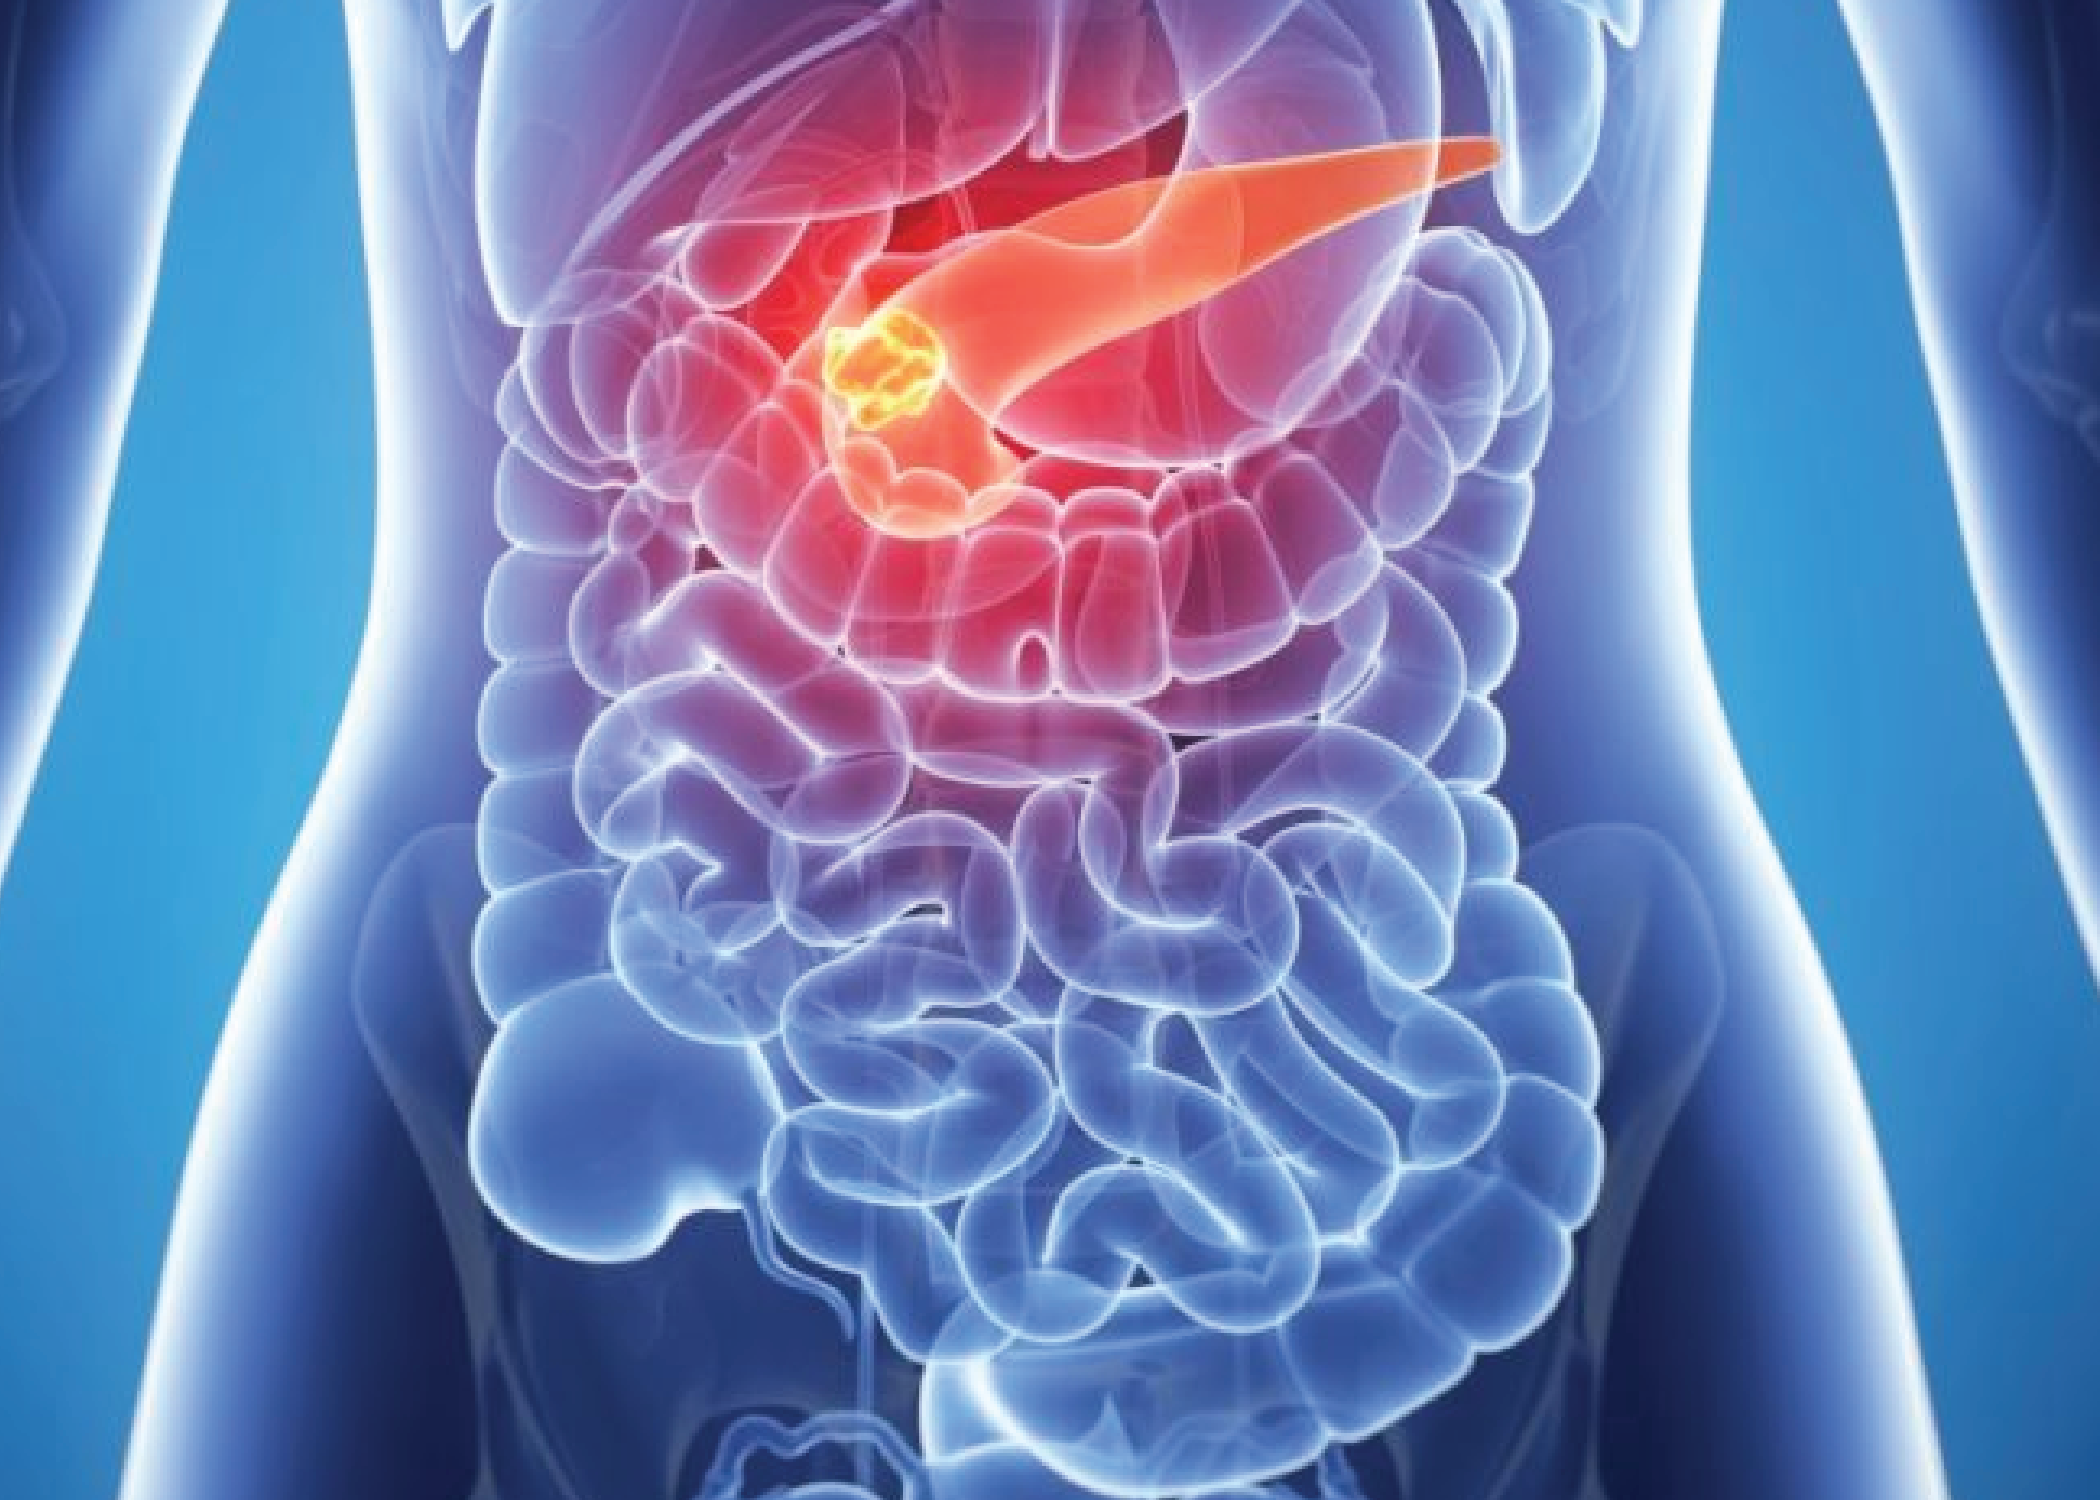 Tumors in pancreas